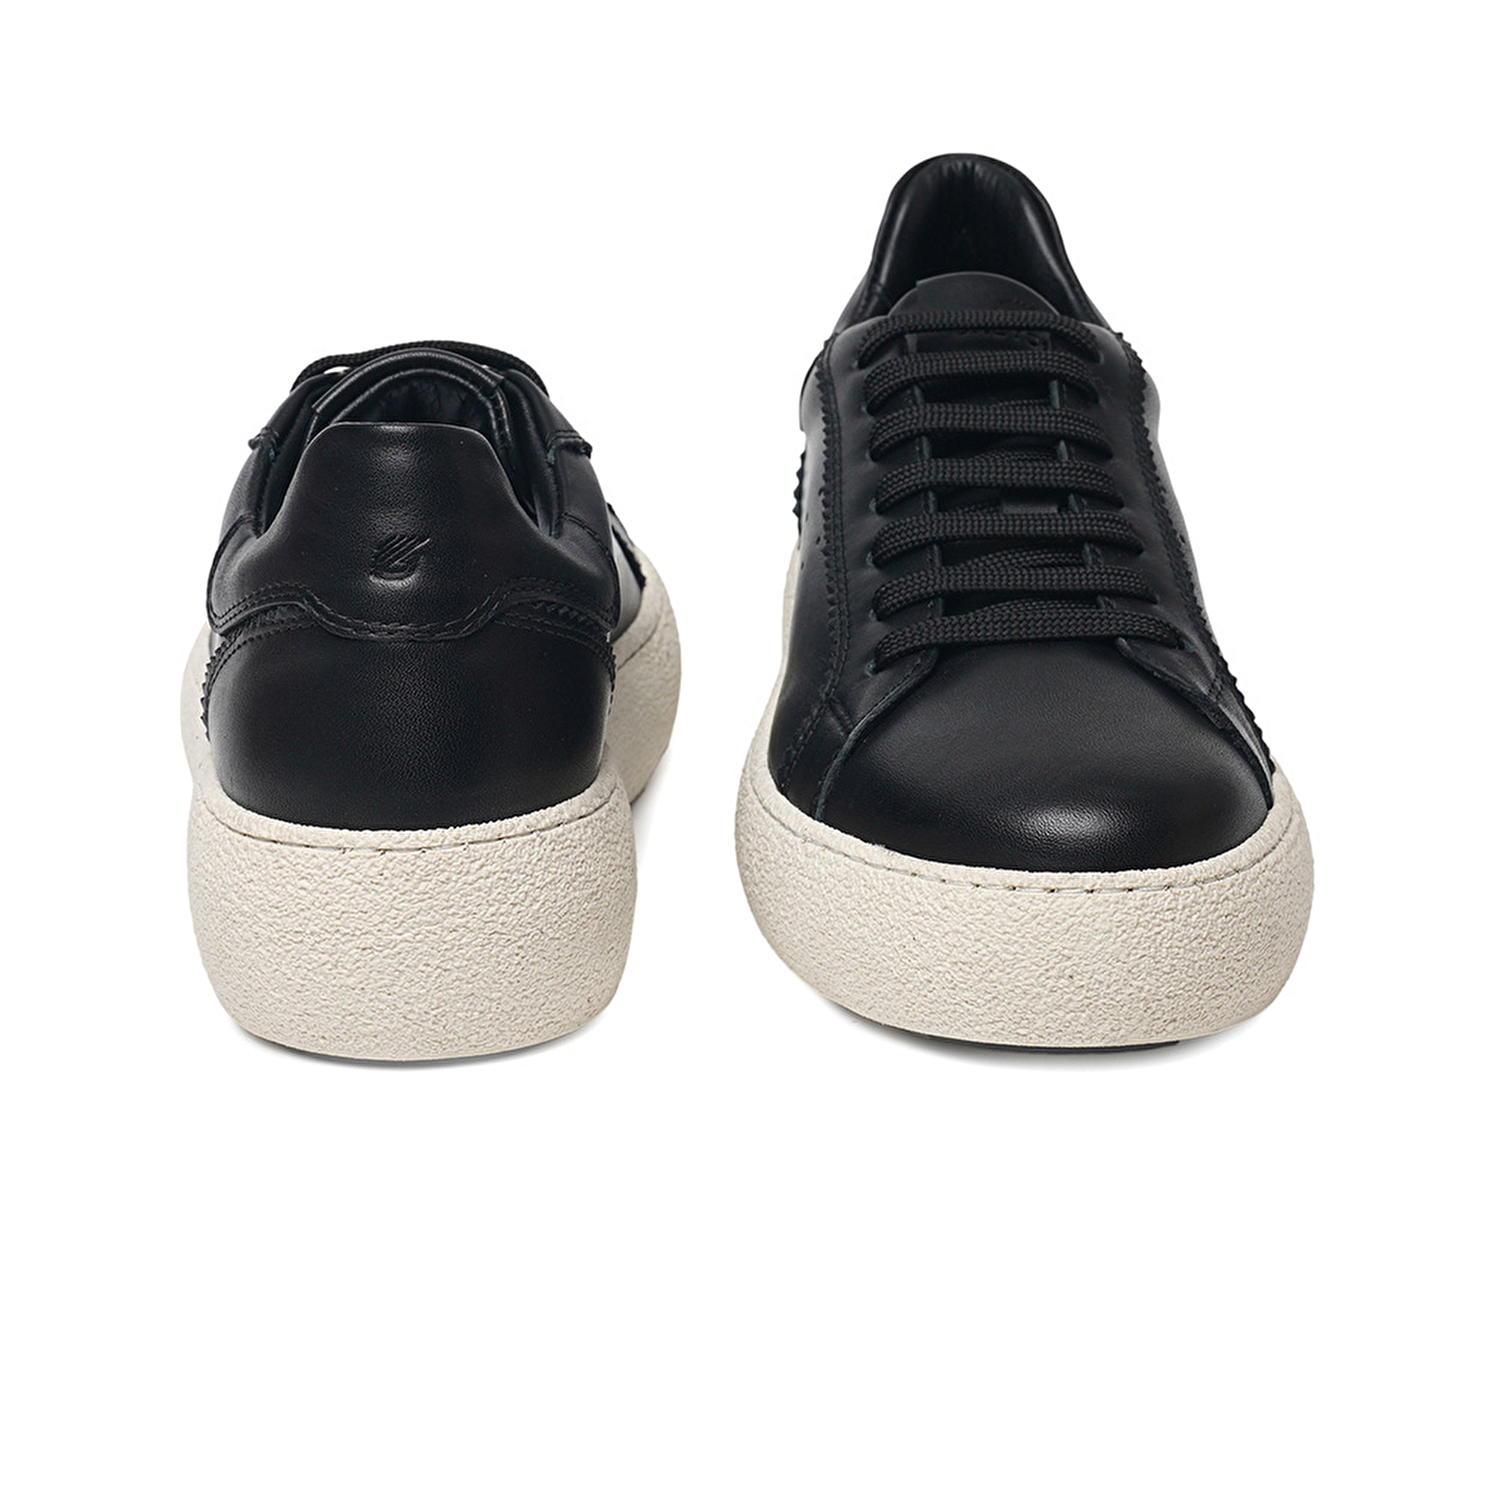 Kadın Siyah Hakiki Deri Sneaker Ayakkabı 3K2SA72140-6